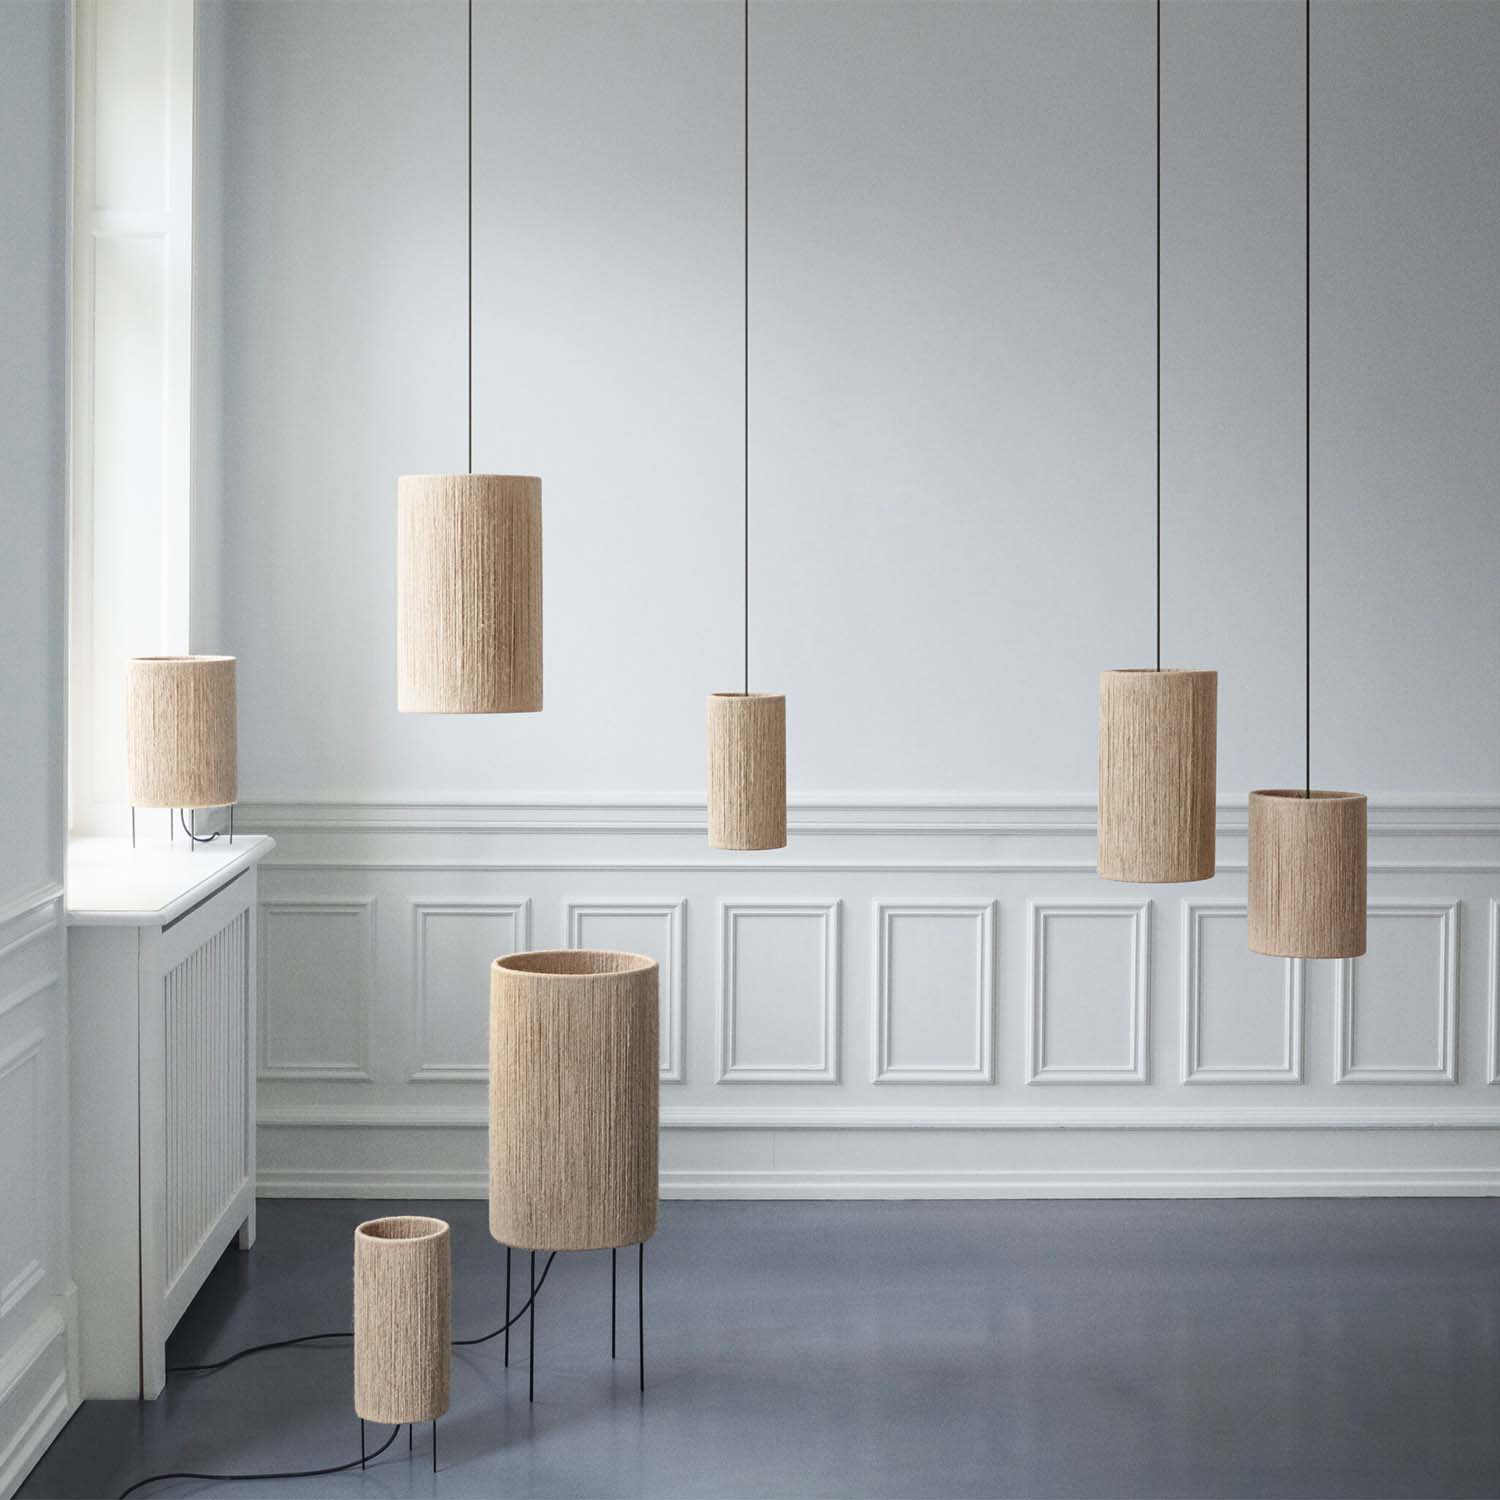 RO – Stehlampe aus Jutegarn im Bohemian-Stil für das Wohnzimmer